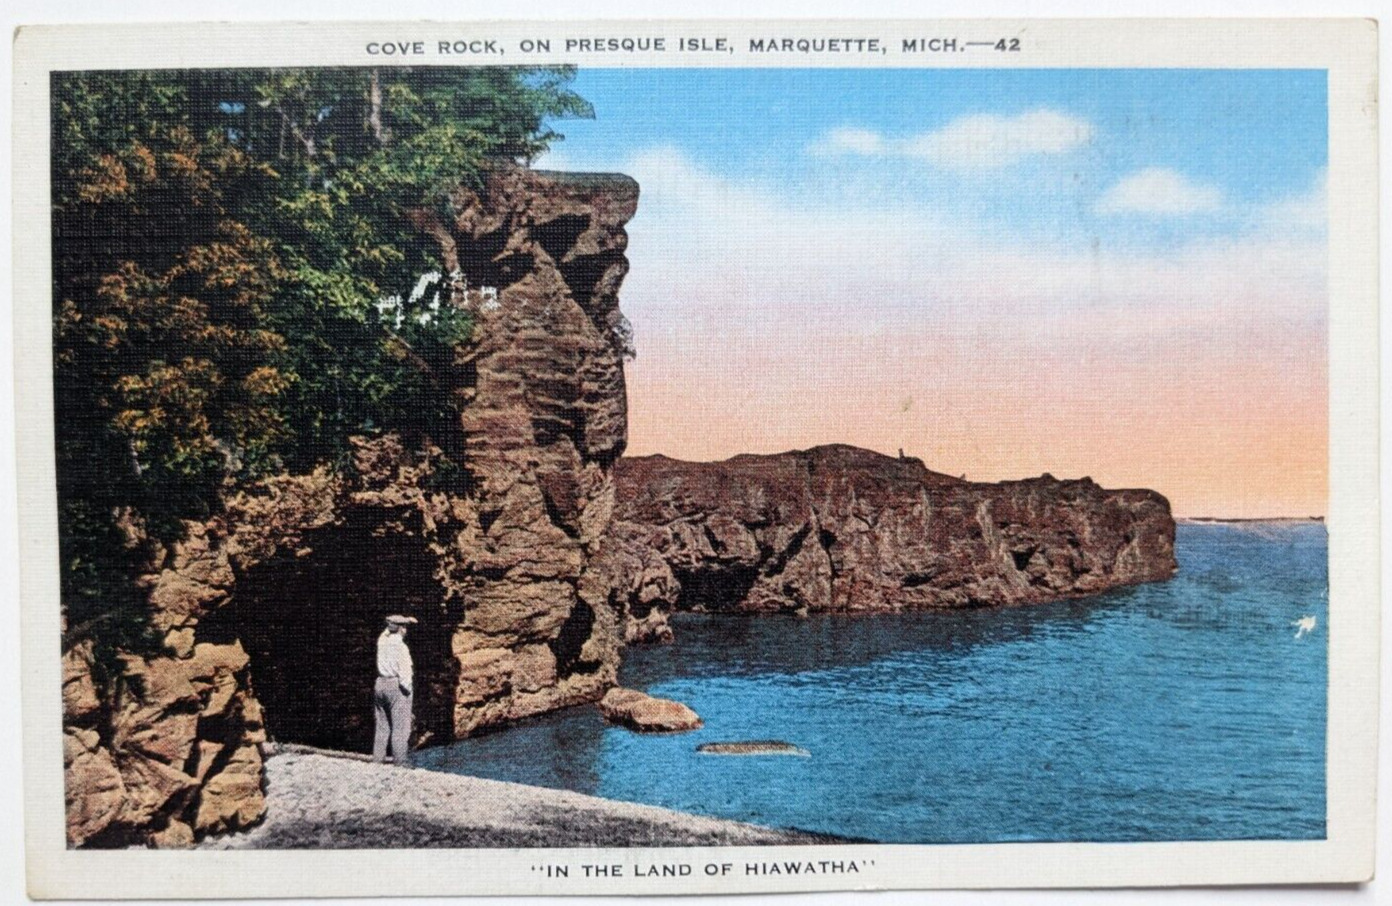 Cove Rock on Presque Isle Marquette Michigan MI Land of Hiawatha Postcard A1